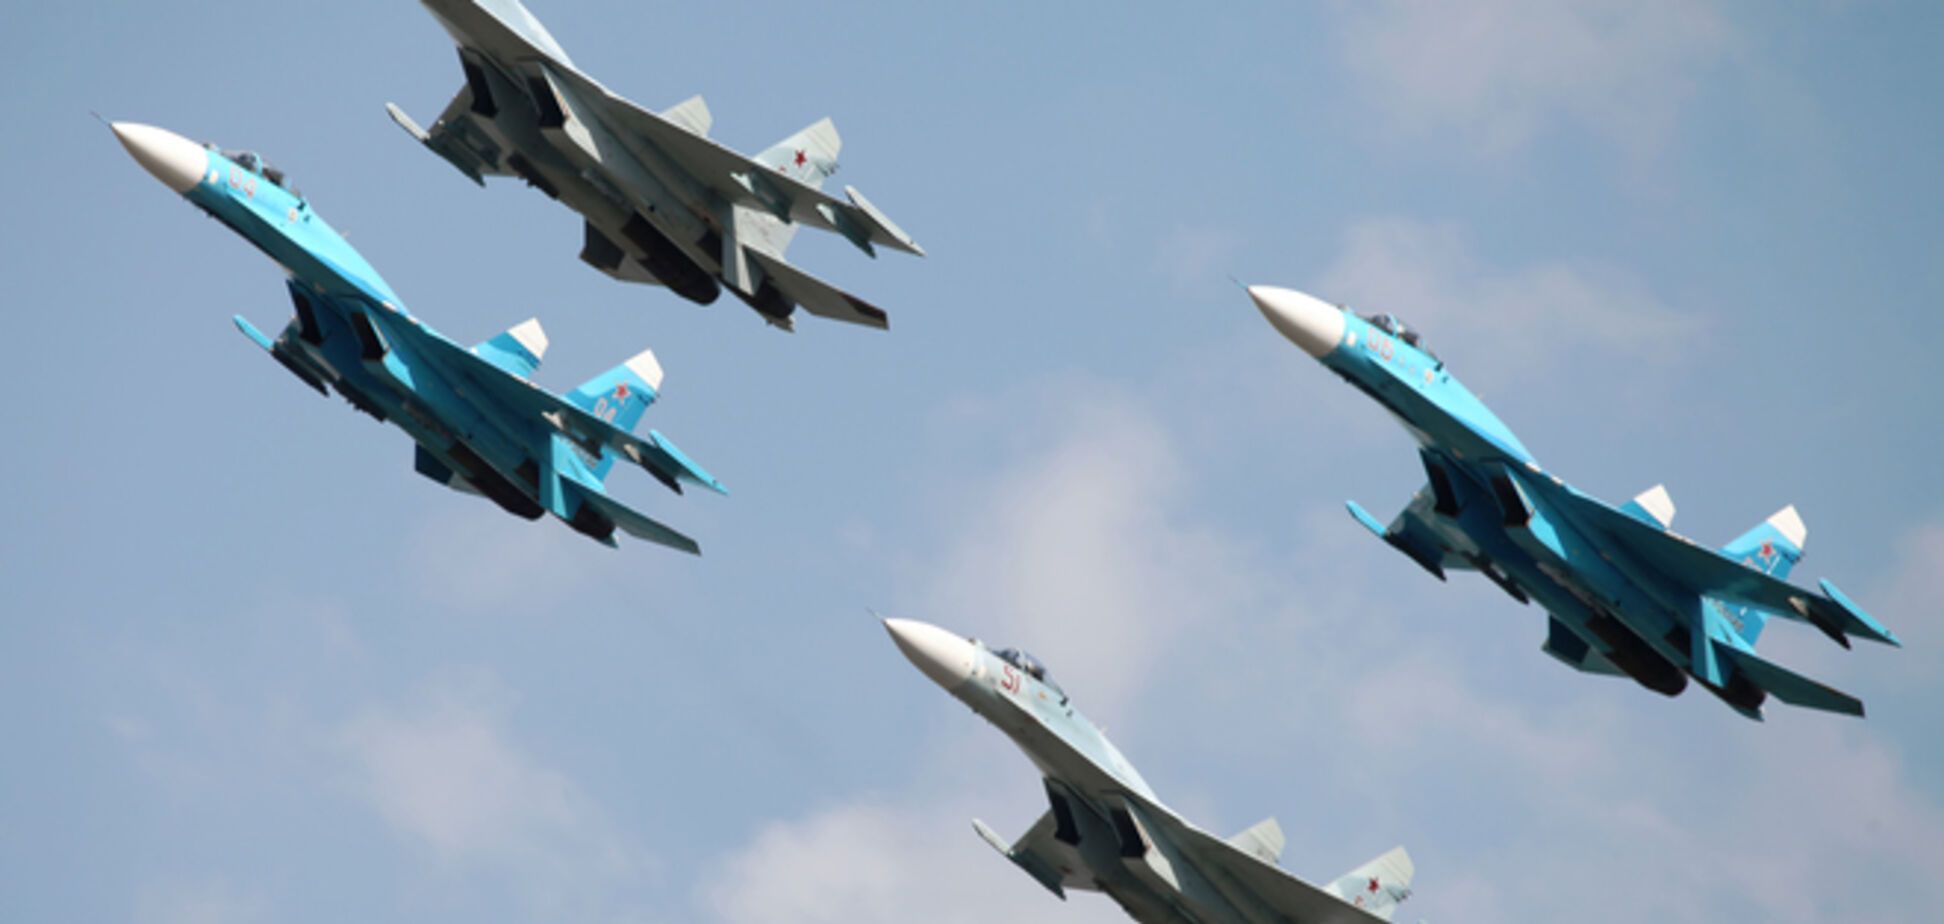 Активность авиации РФ около границ Украины имела демонстративный характер - Минобороны